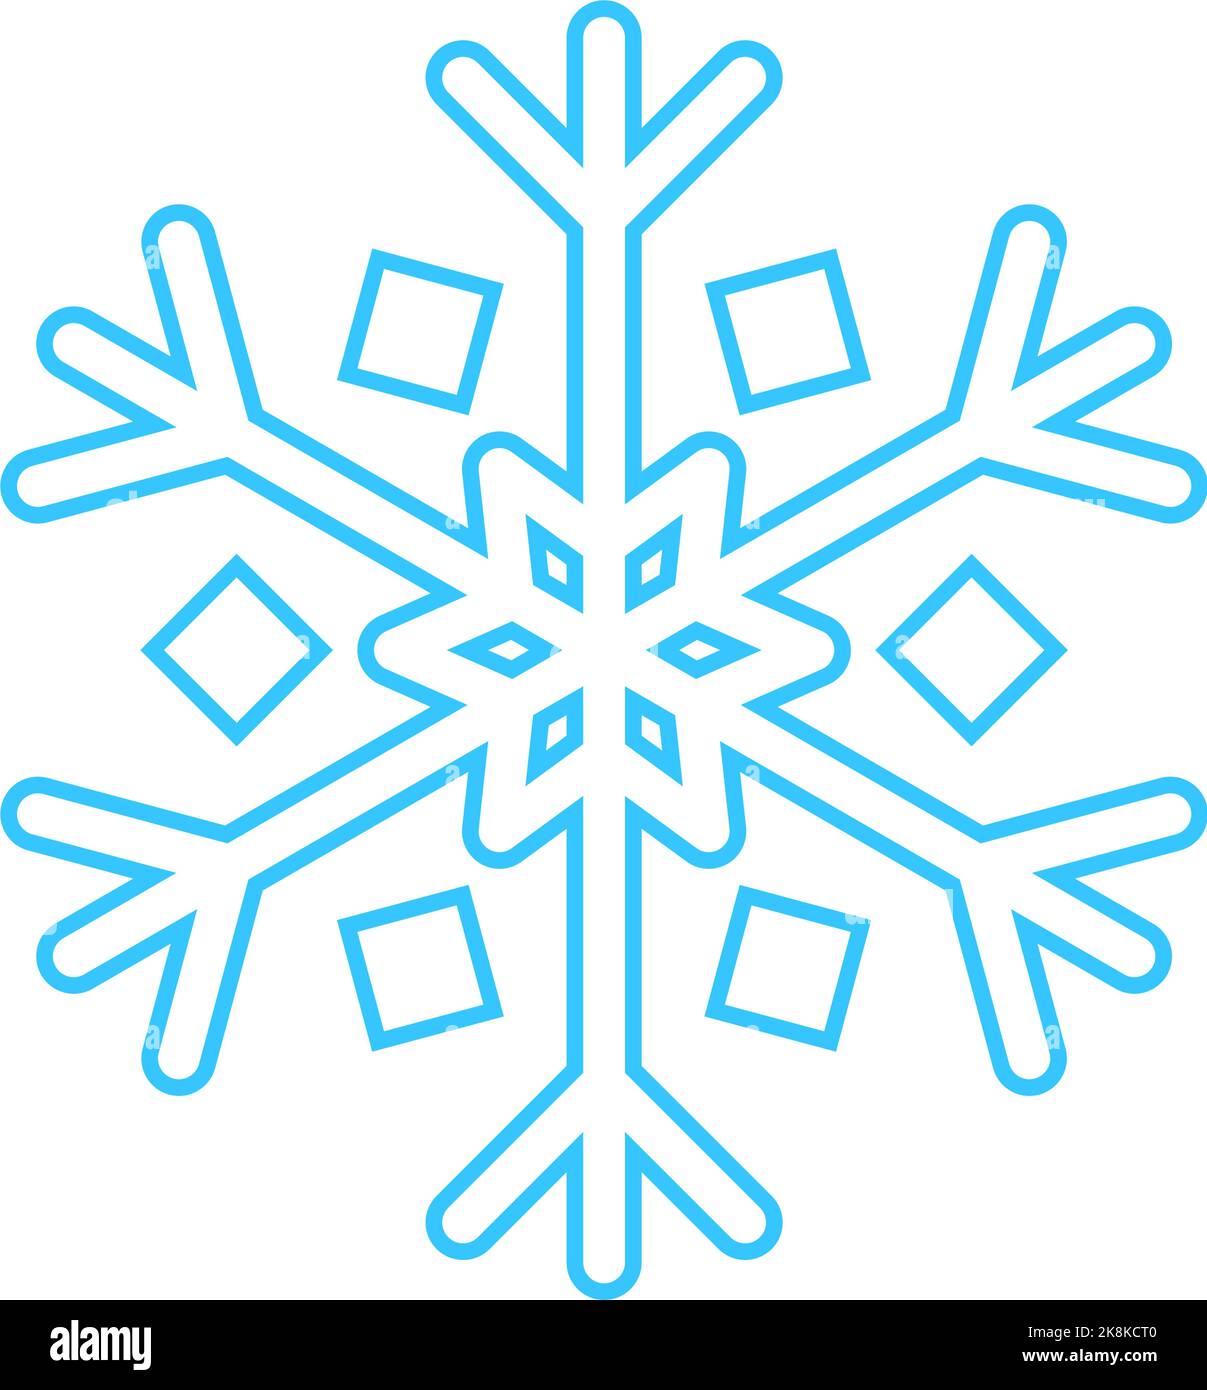 Einfache Schneeflocke aus blauen Linien. Festliche Dekoration für Neujahr und Weihnachten, Symbol des Winters, Element für Design. Vektorgrafik Stock Vektor